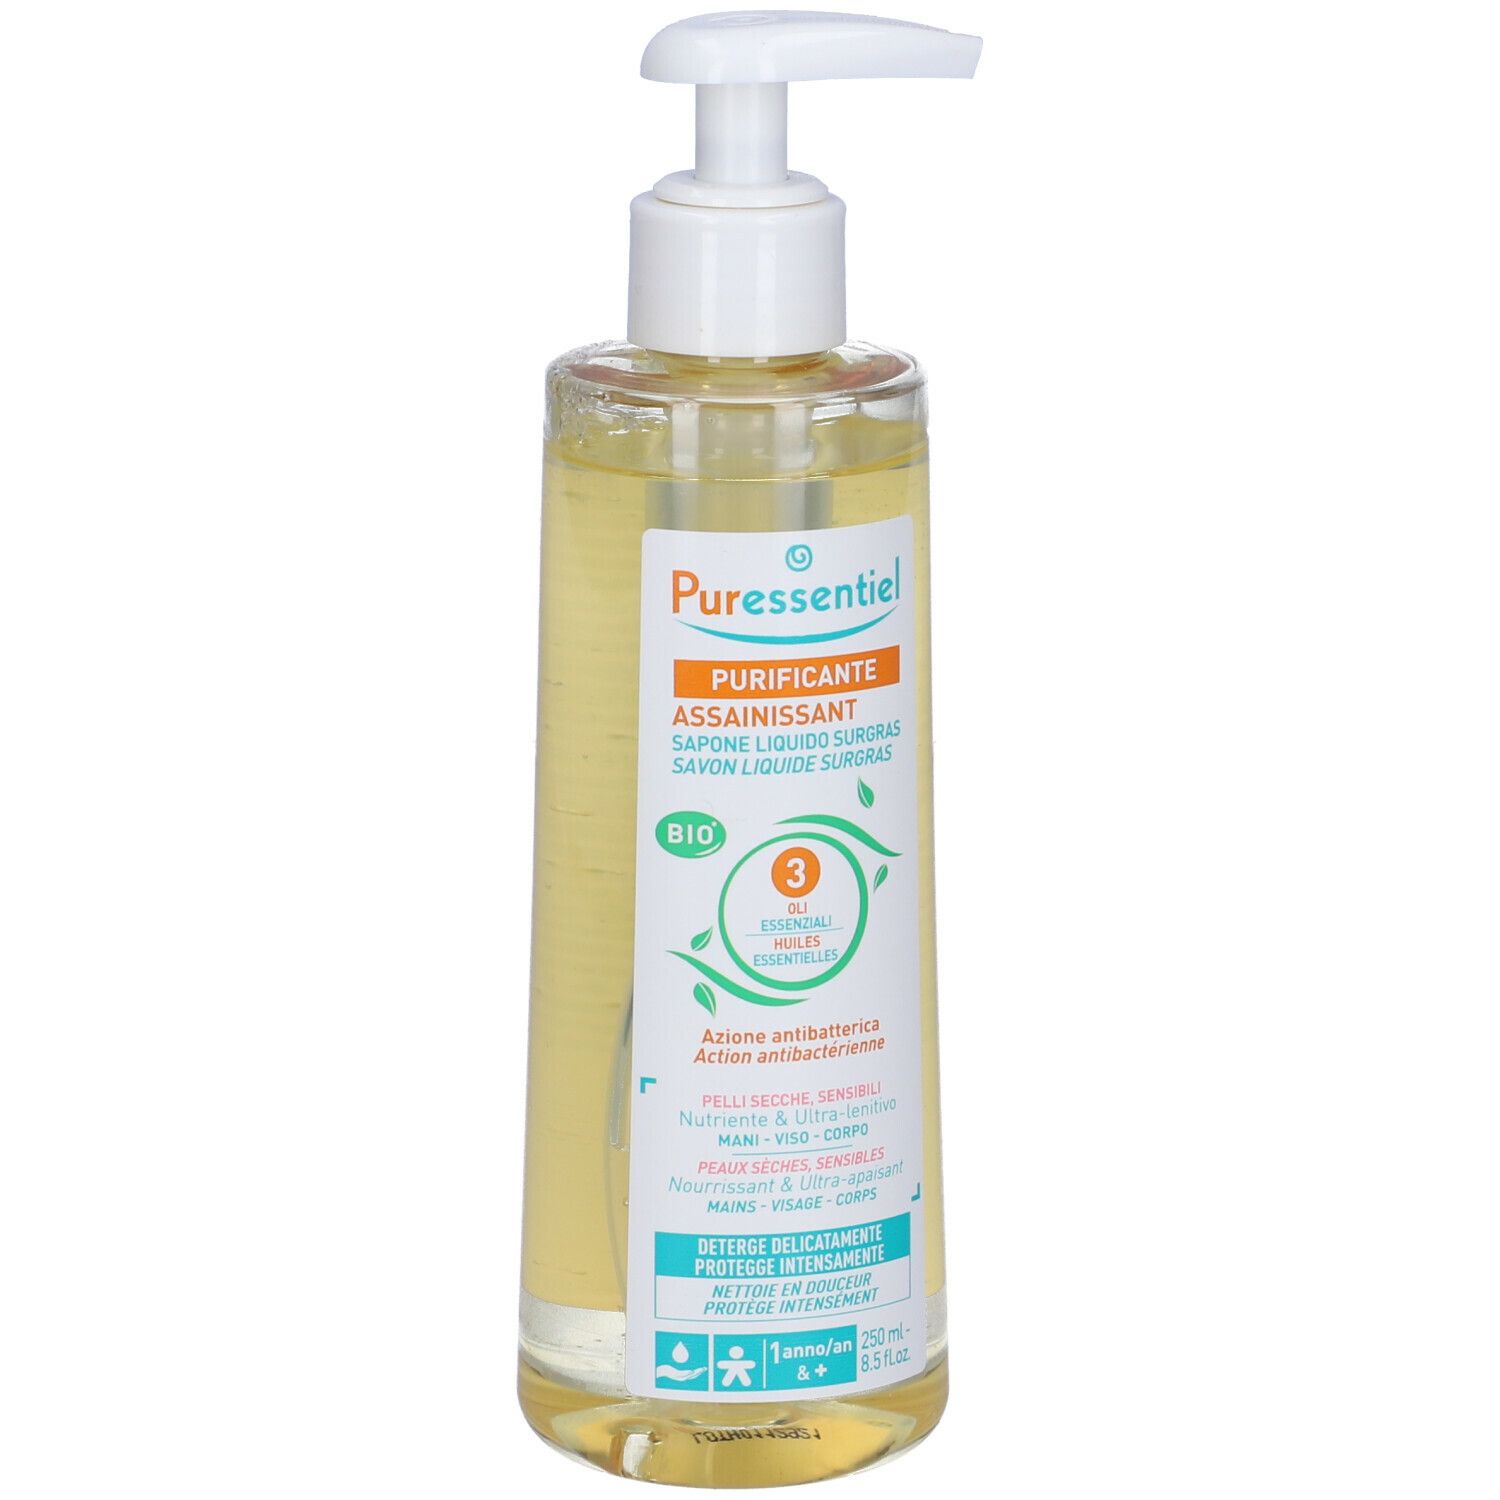 Puressentiel - Purificante Spray 200 ml + Purificante Gel Detergente Mani 